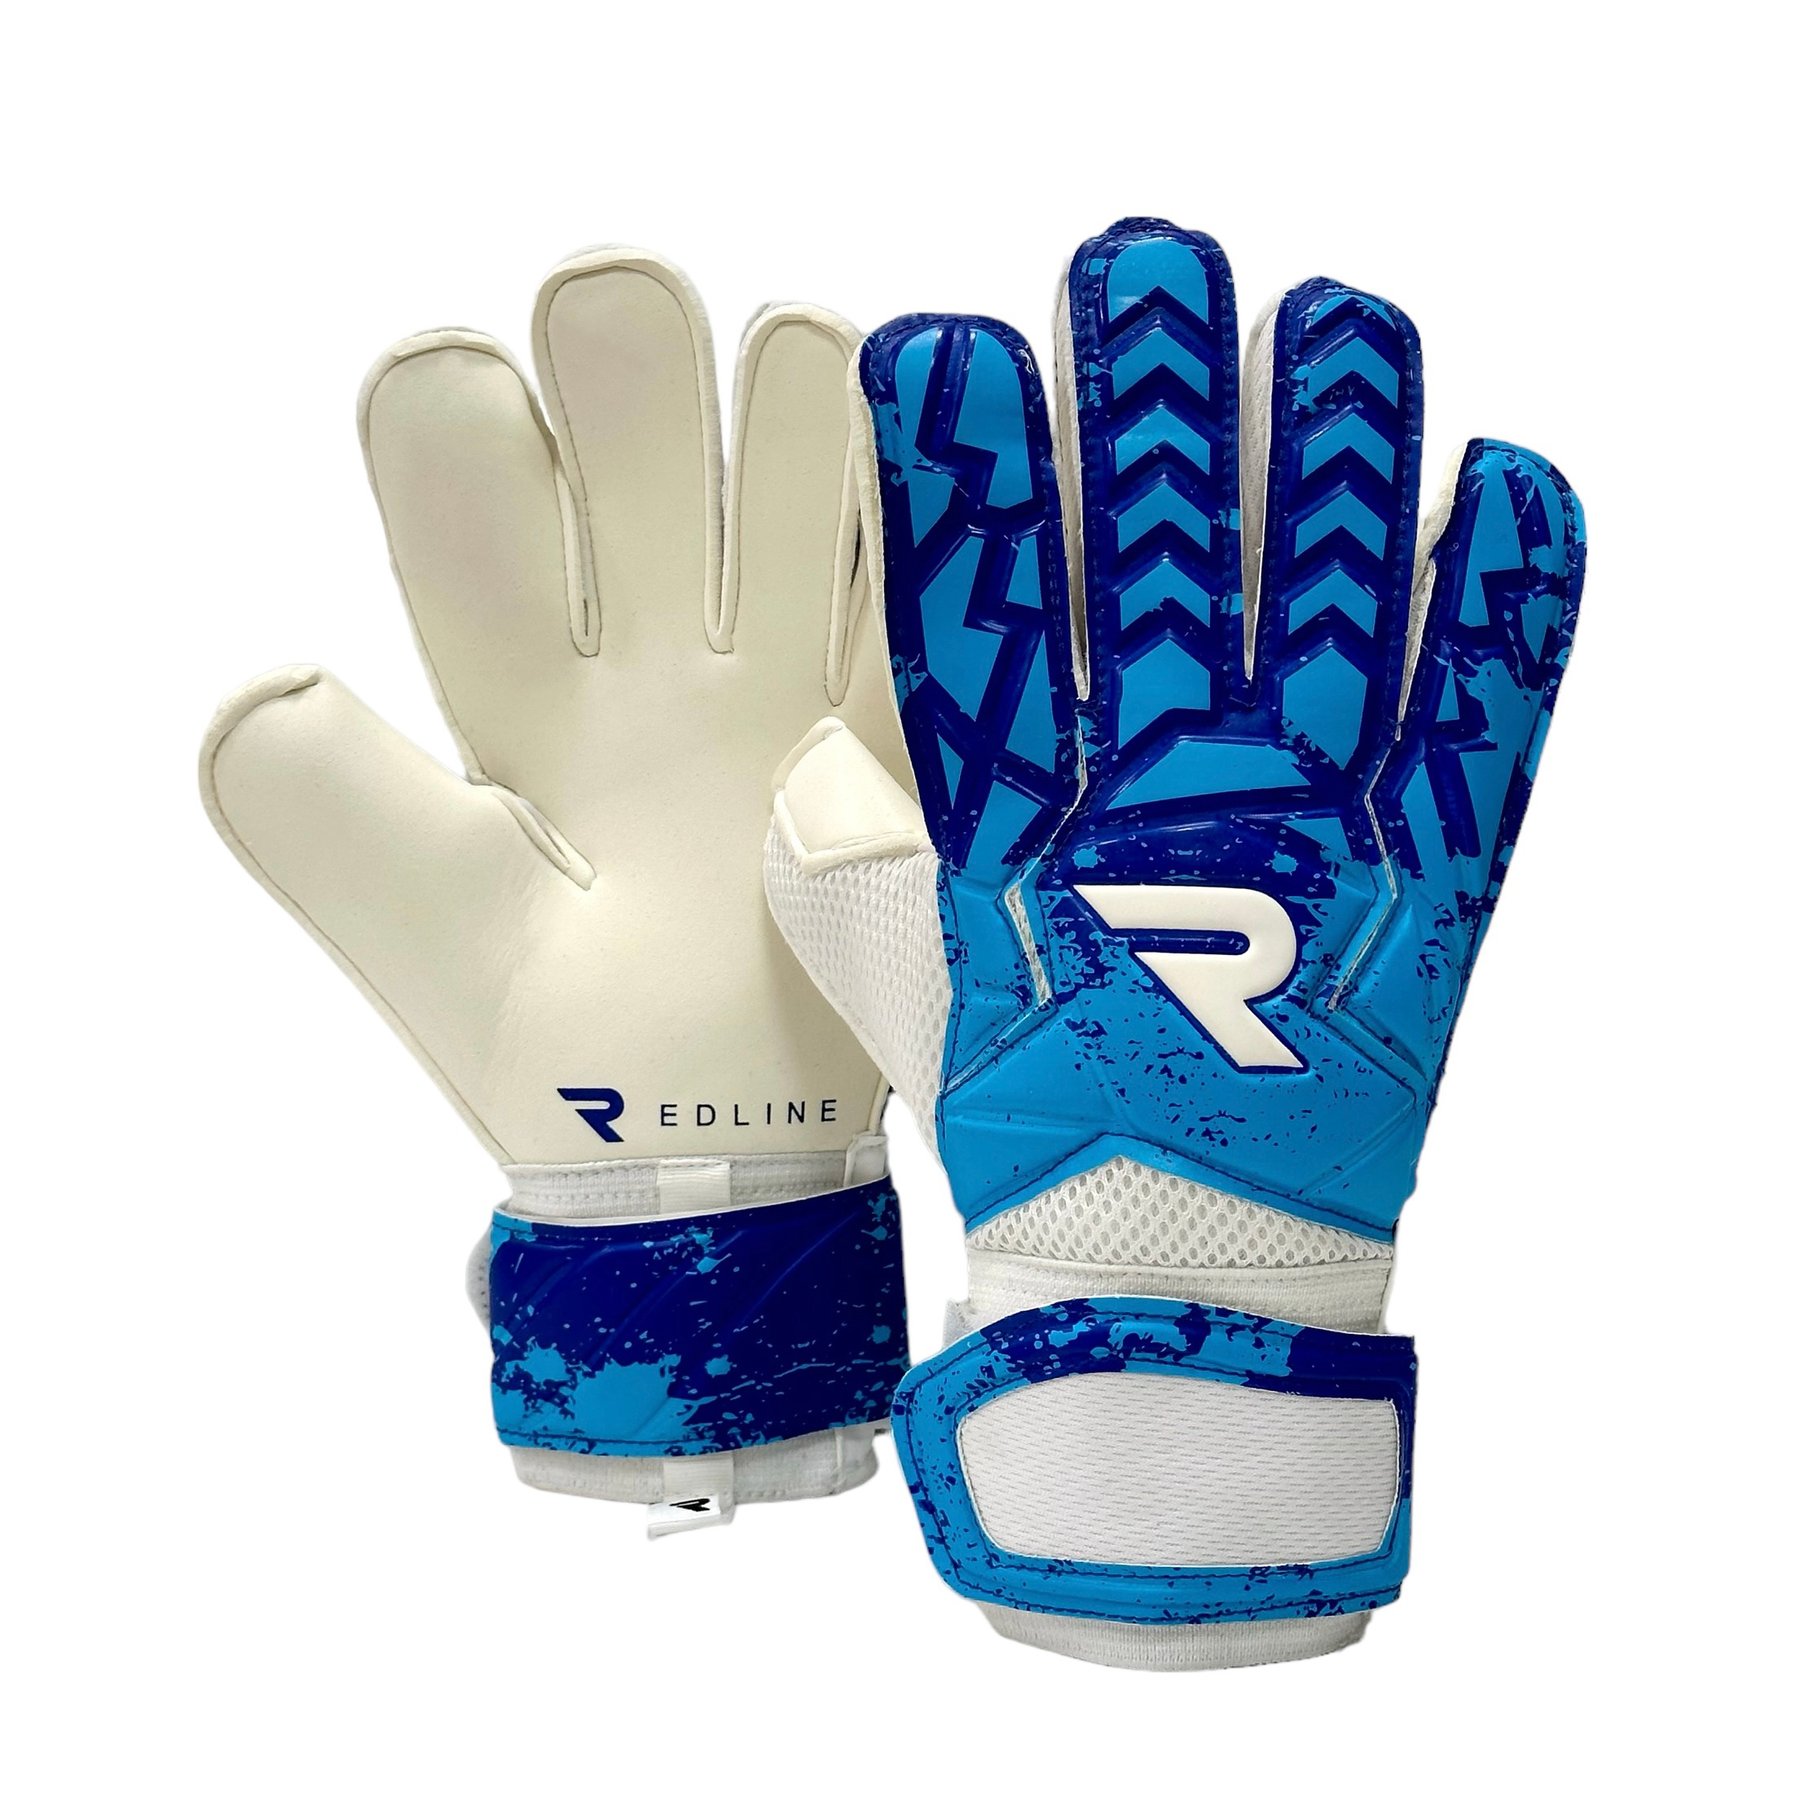 Вратарские перчатки Redline Neos Blue 2.0 купить